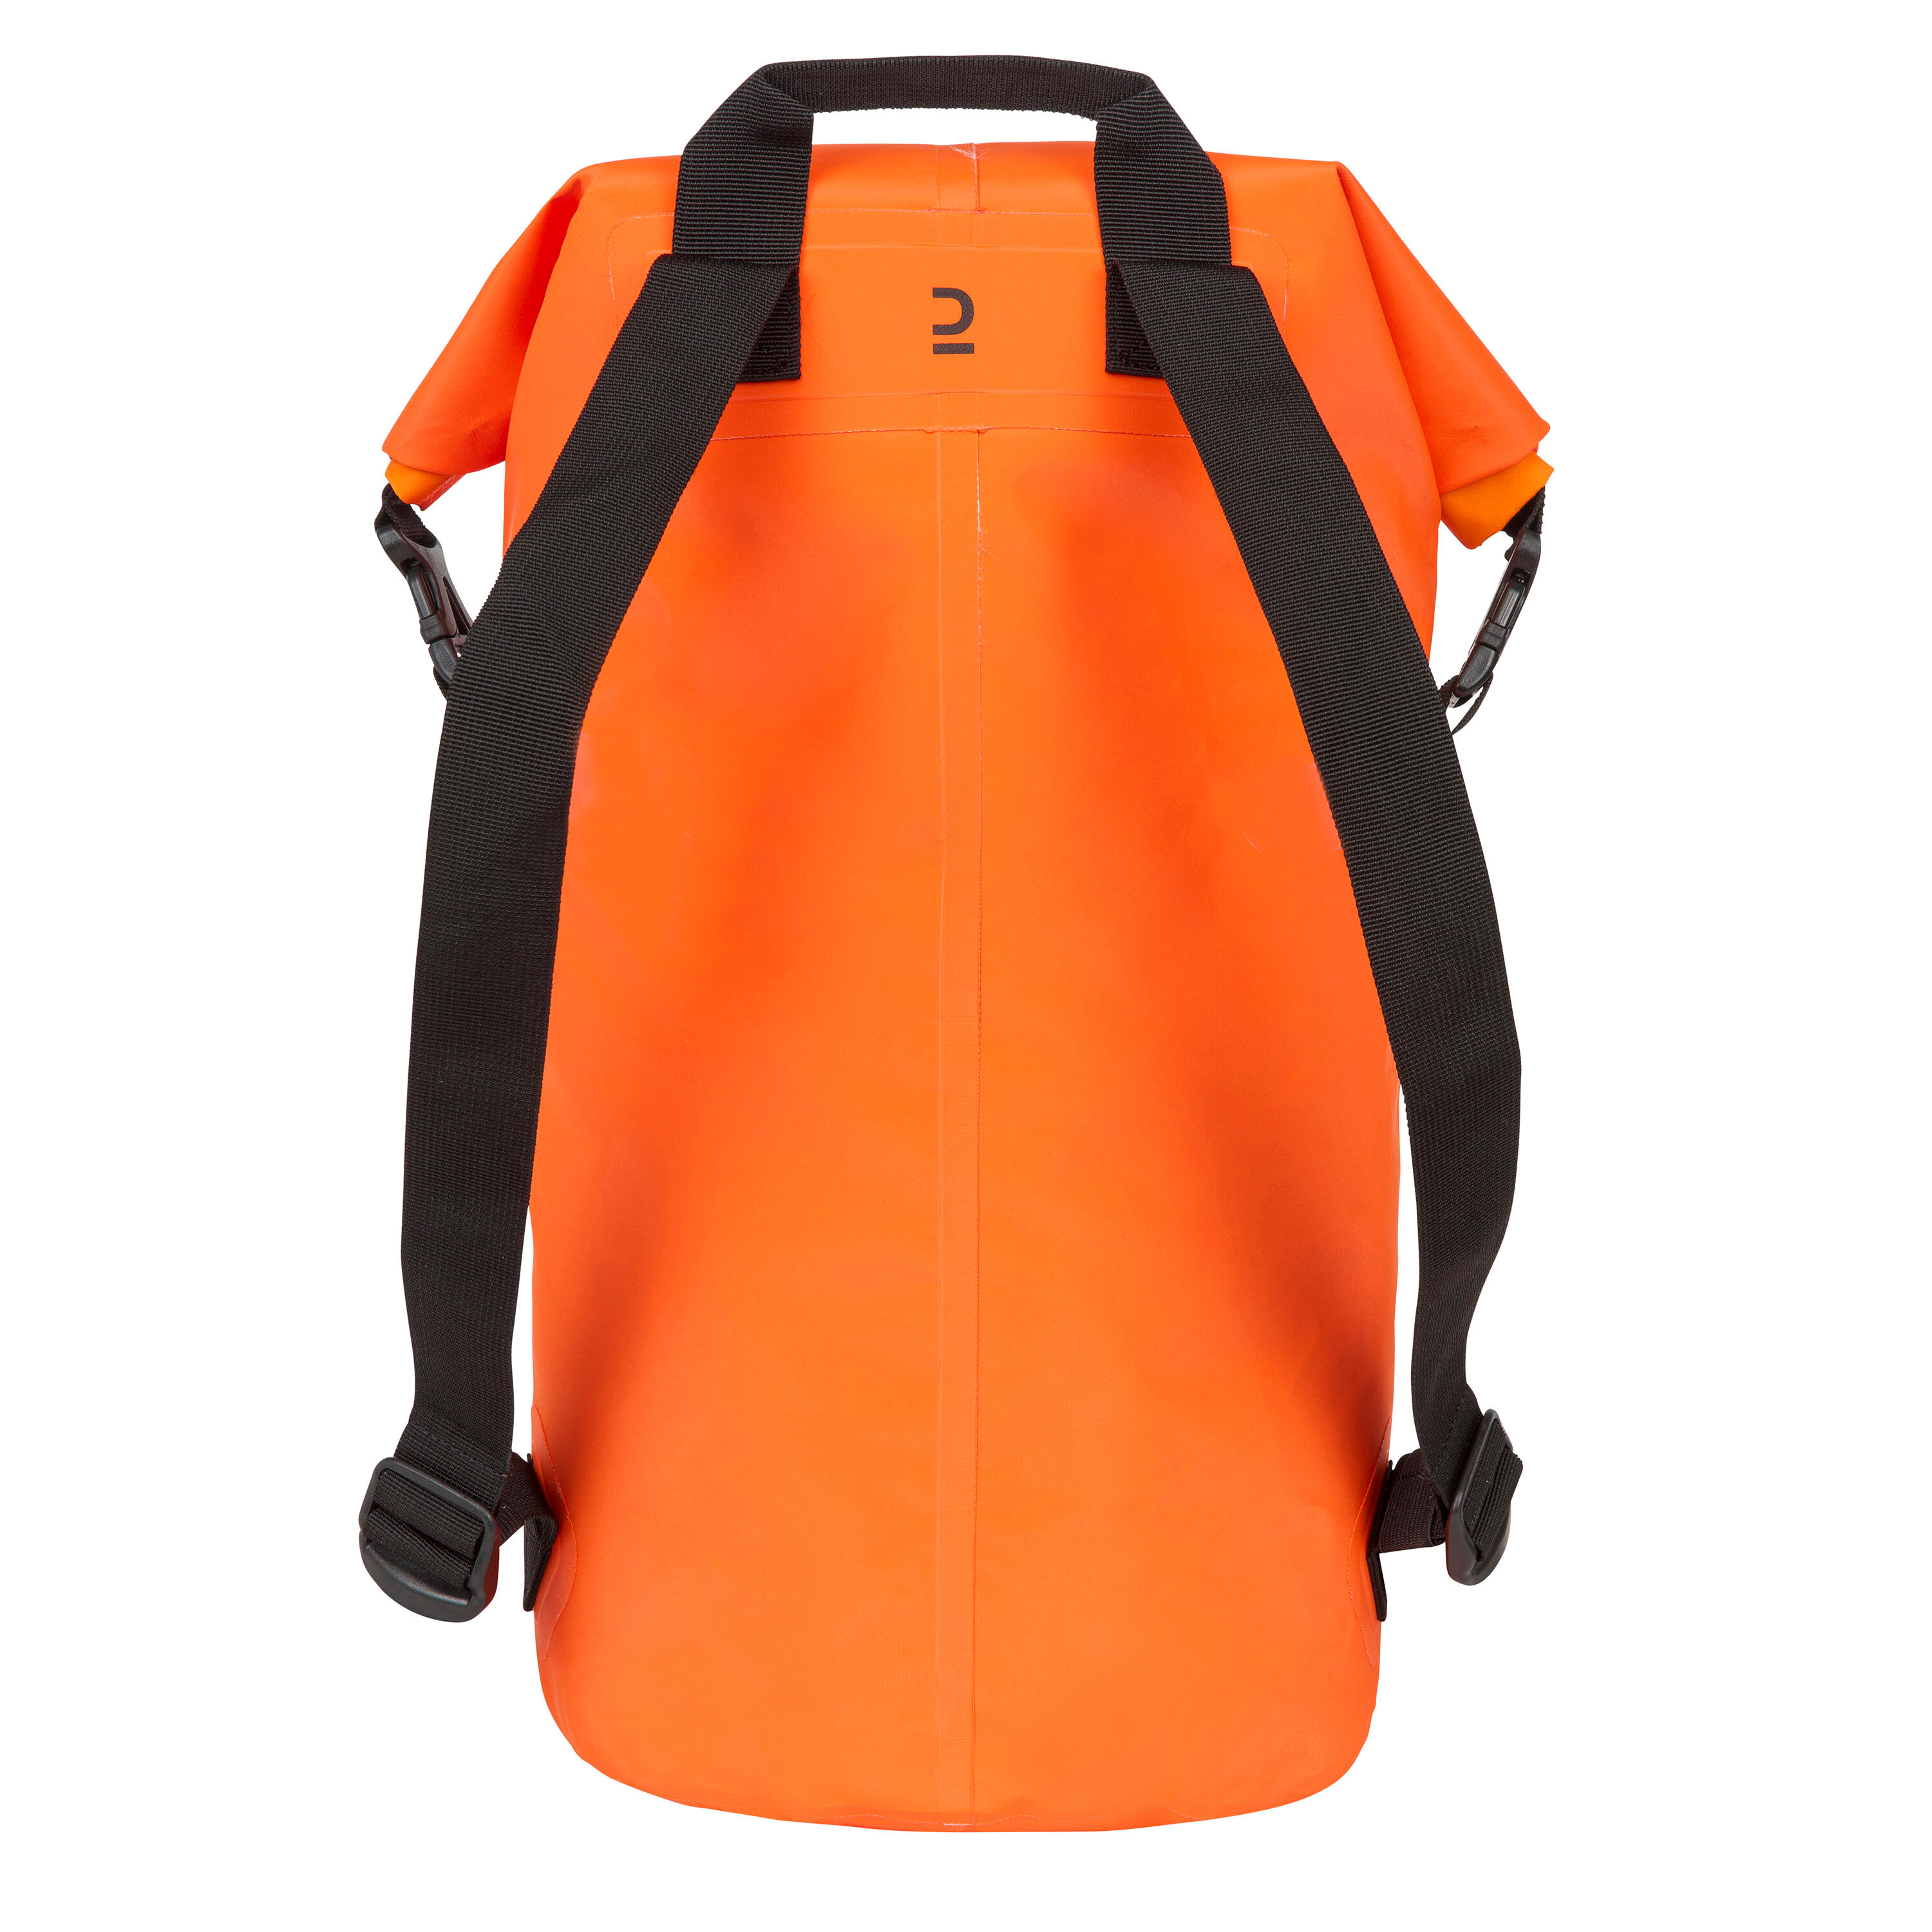 Waterproof bag IPX6 30 L orange 4/10